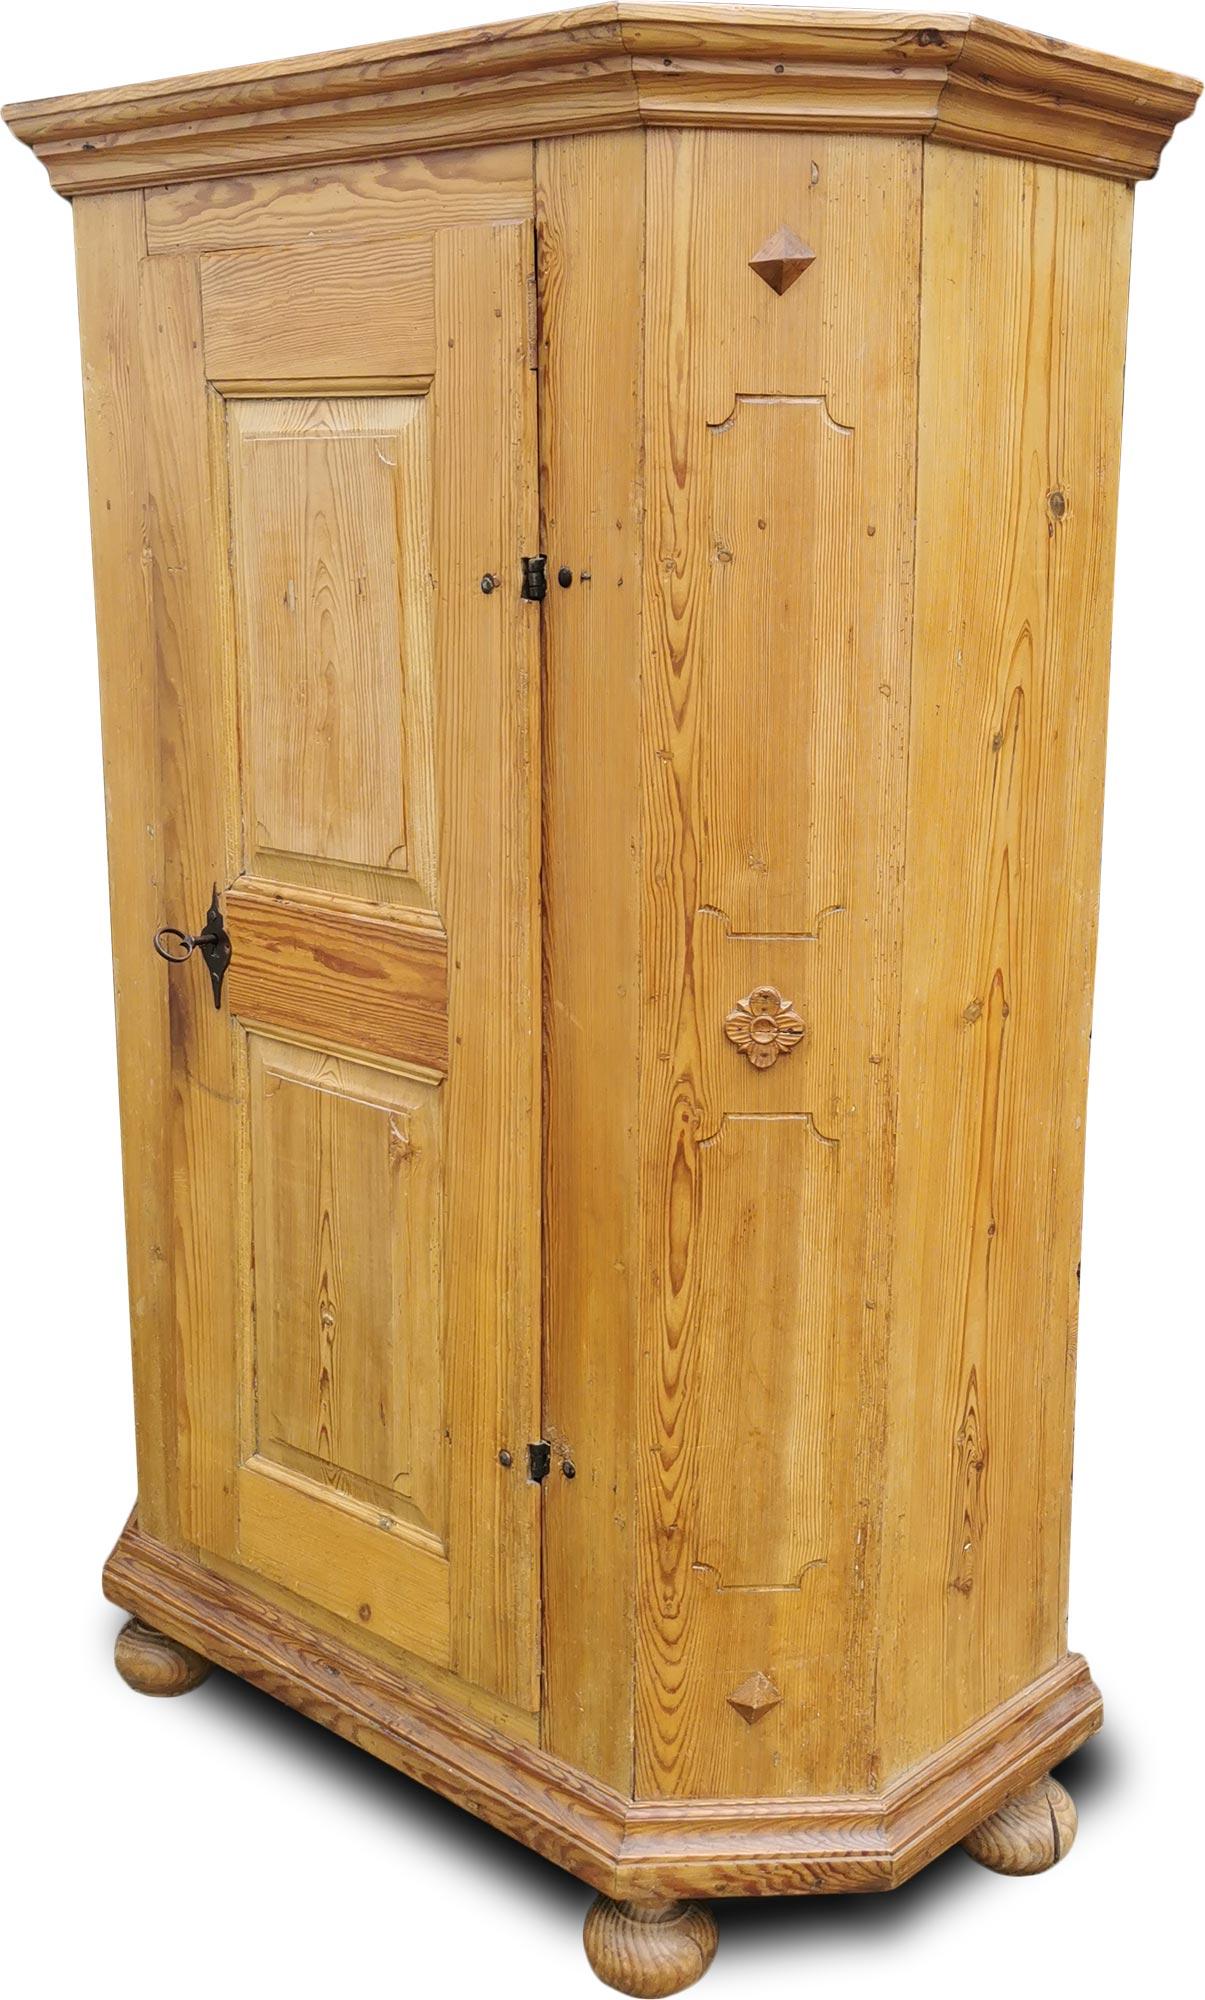 Eintüriger Kleiderschrank aus Tanne von 1700

Maße: Höhe 185cm - Breite 115cm (130 bis zu den Rahmen) - Tiefe 50cm (57 bis zu den Rahmen)

Schrank aus Fichtenholz, mit einer Tür, in sehr gutem Zustand.
Die Tür hat zwei Diamantspiegel und ein